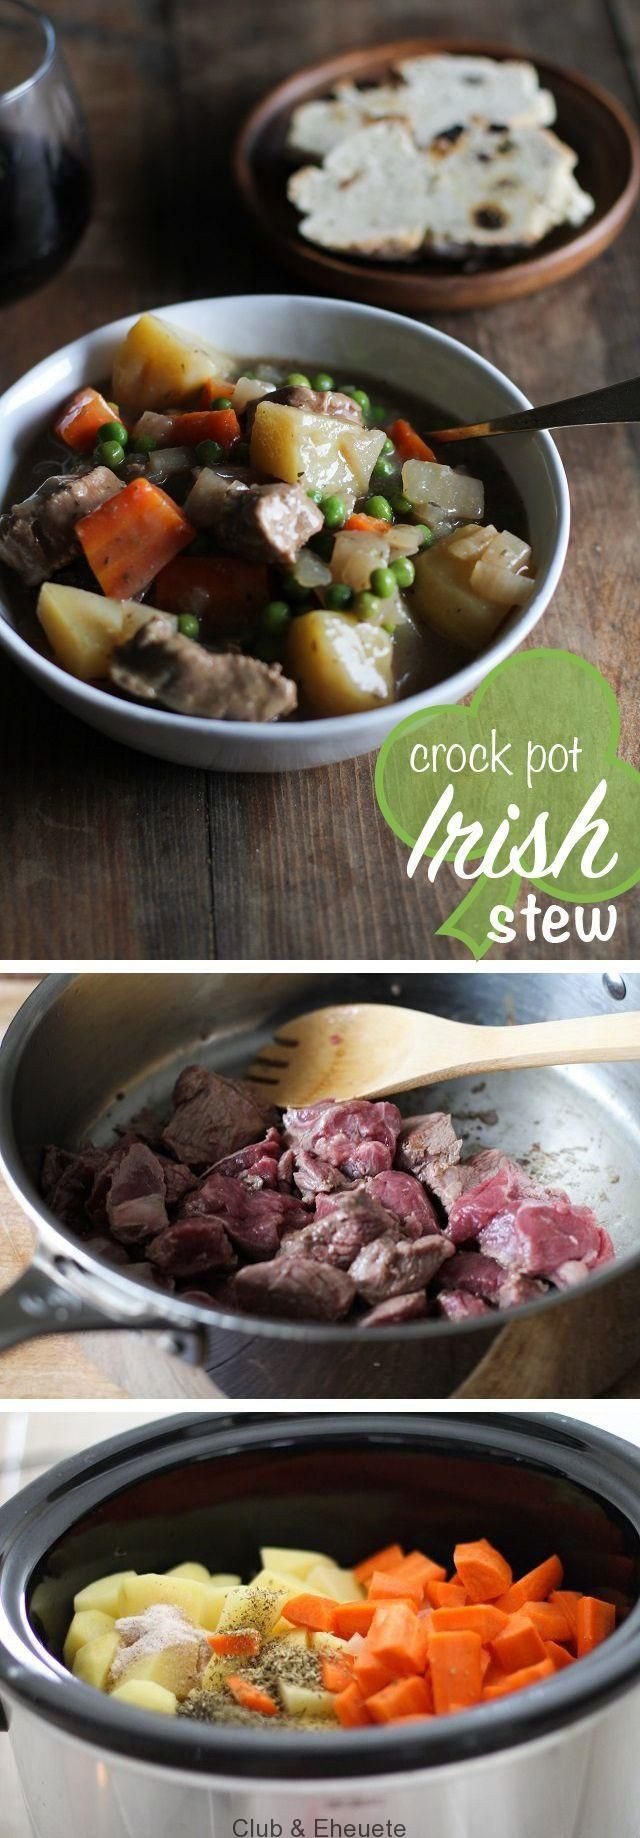 Irish Lamb Stew Crock Pot
 How to Make Crock Pot Irish Stew